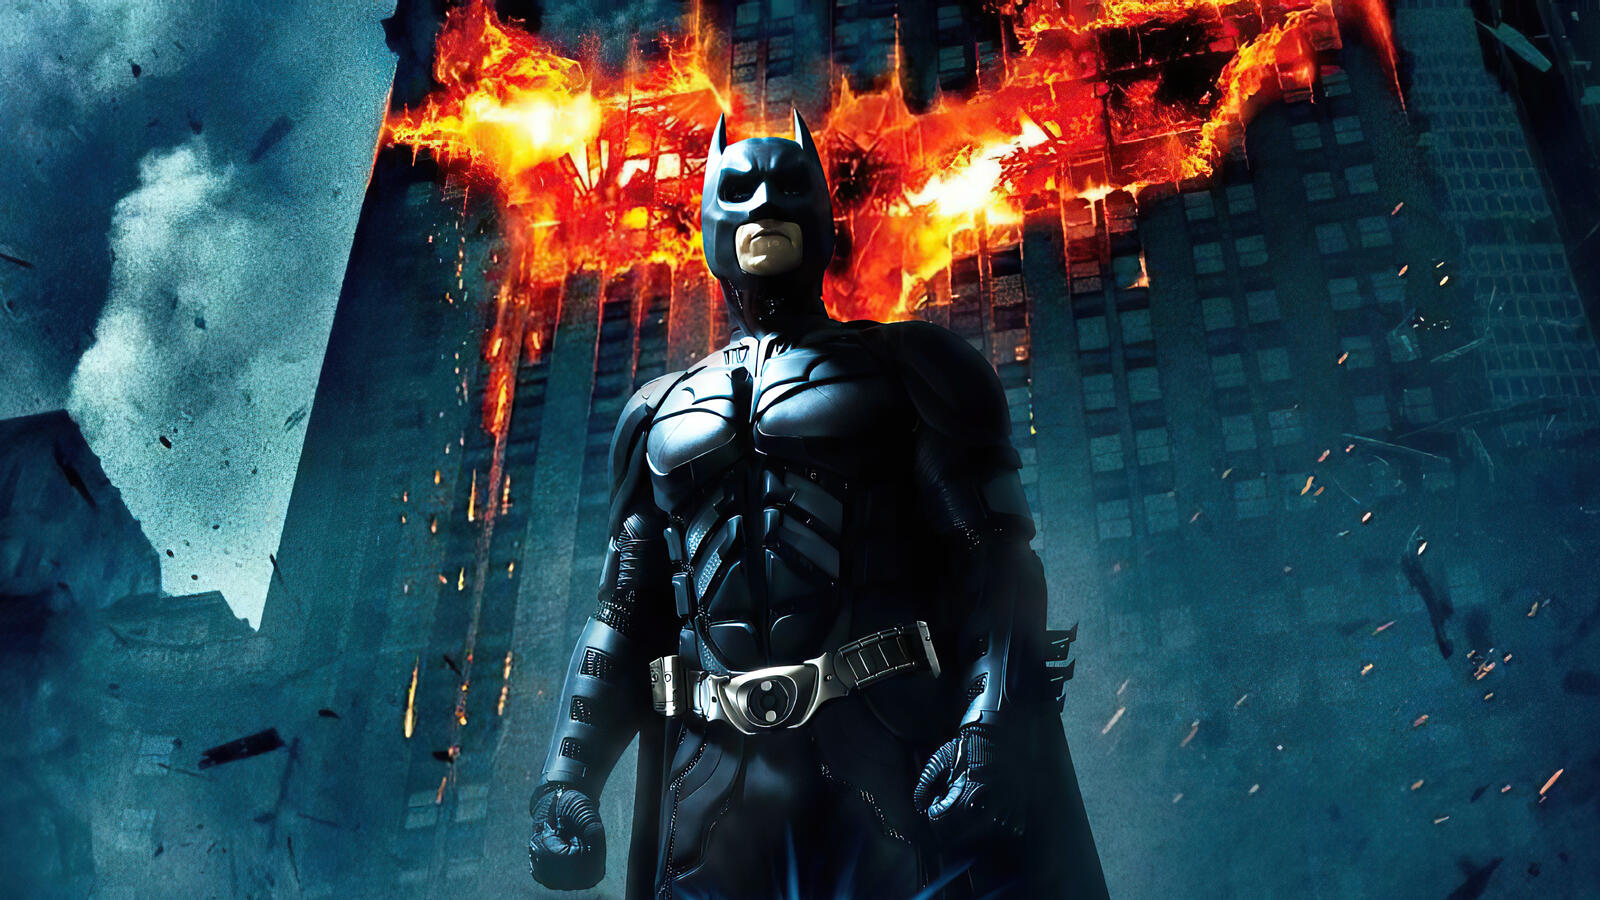 Бесплатное фото Бэтмен на фоне горящего здания